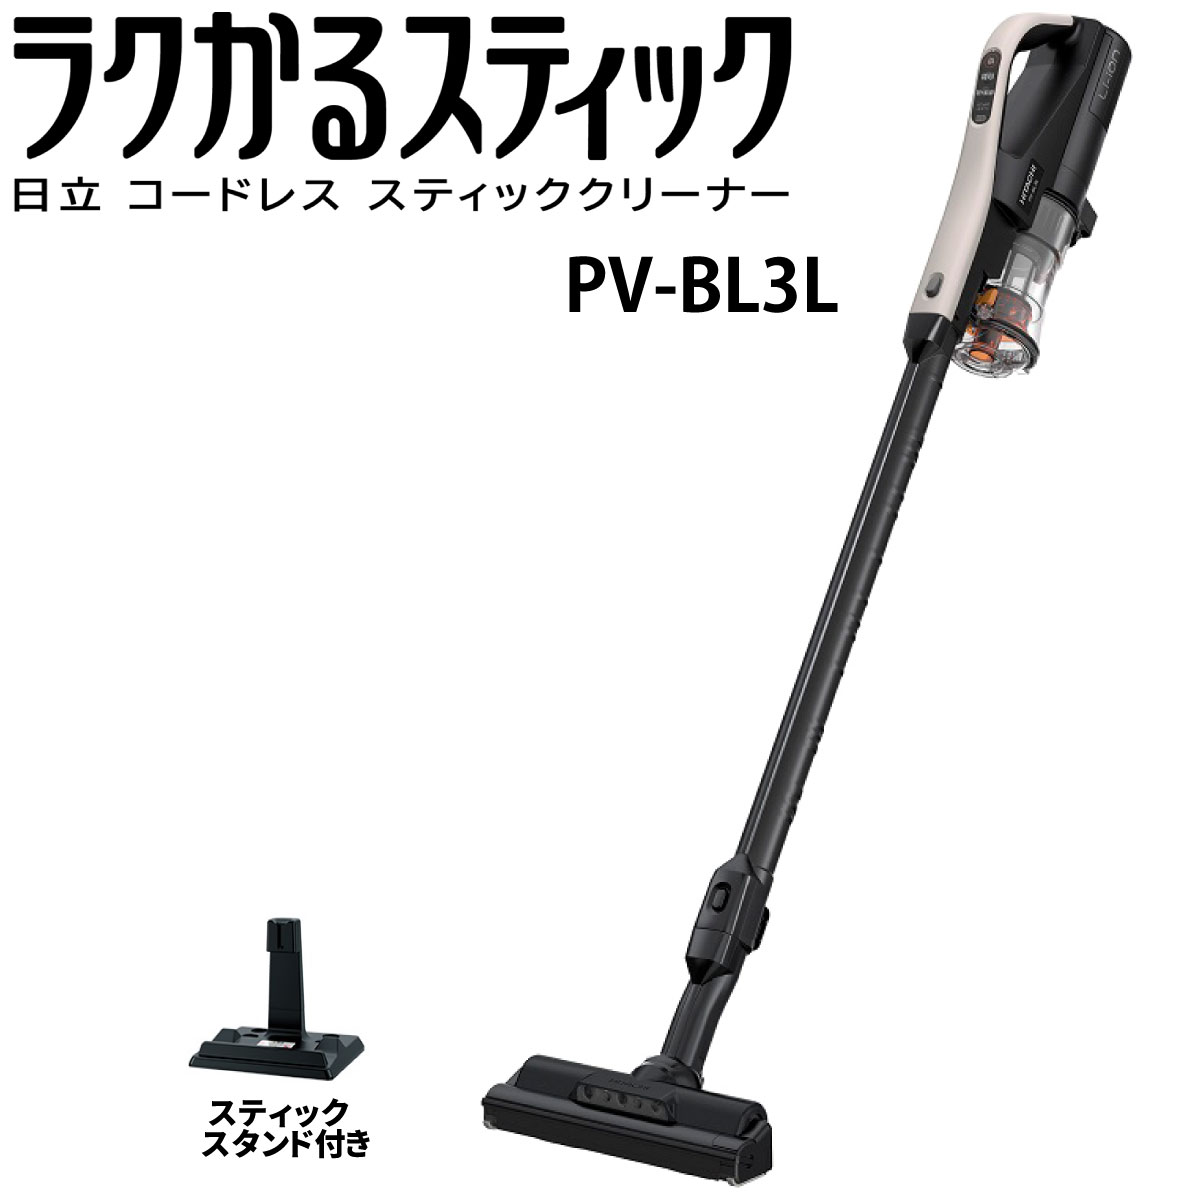 【楽天市場】日立 PV-BL3K-N スティック掃除機 ラクかる 